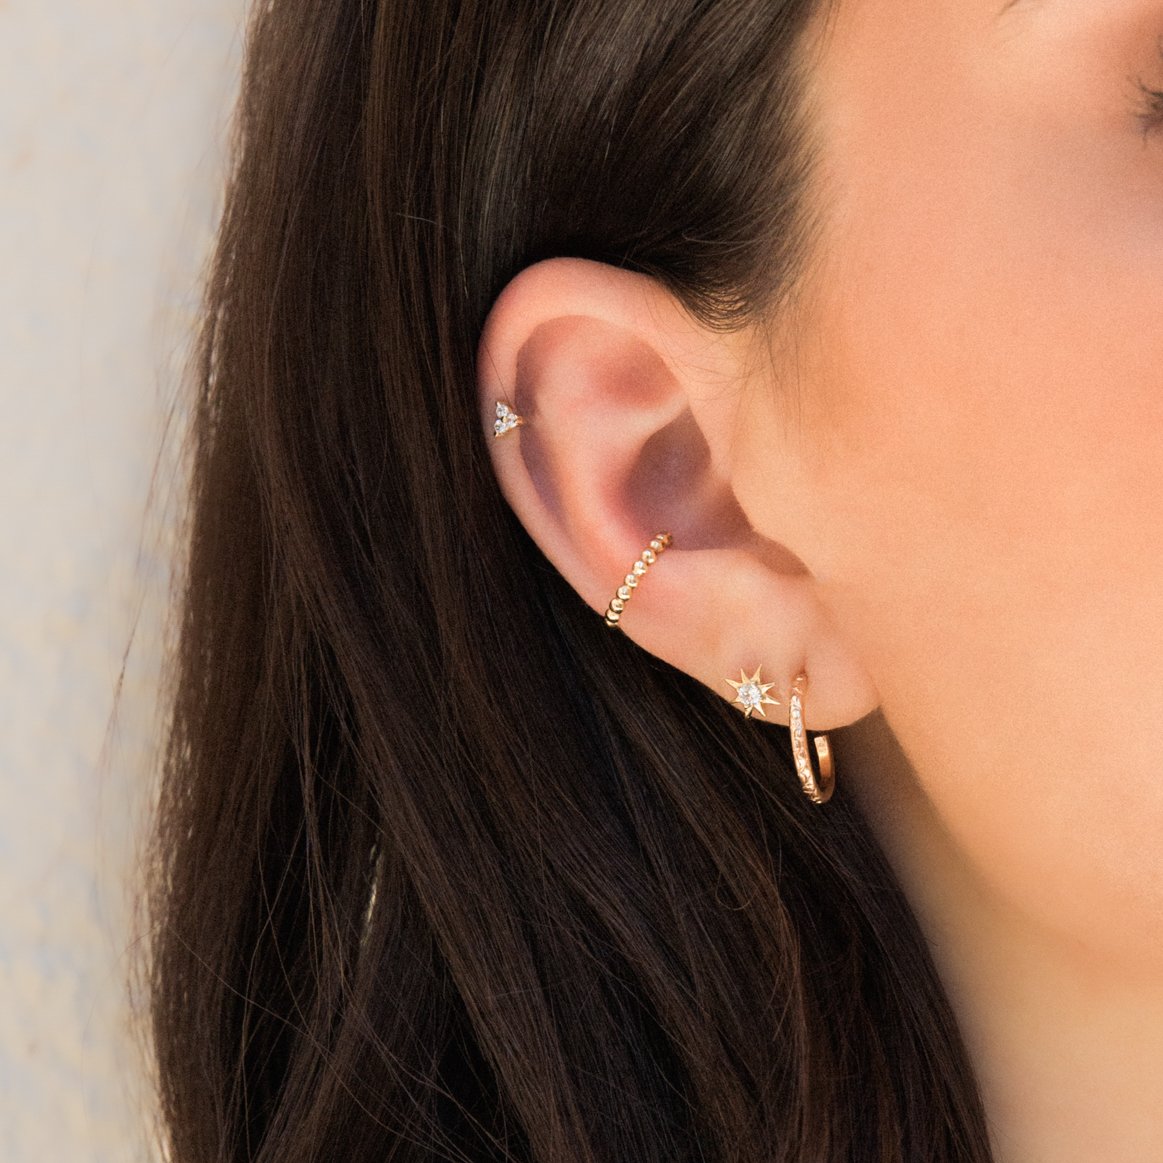 Thin Flower Hoop Earrings by Simple & Dainty Jewelry